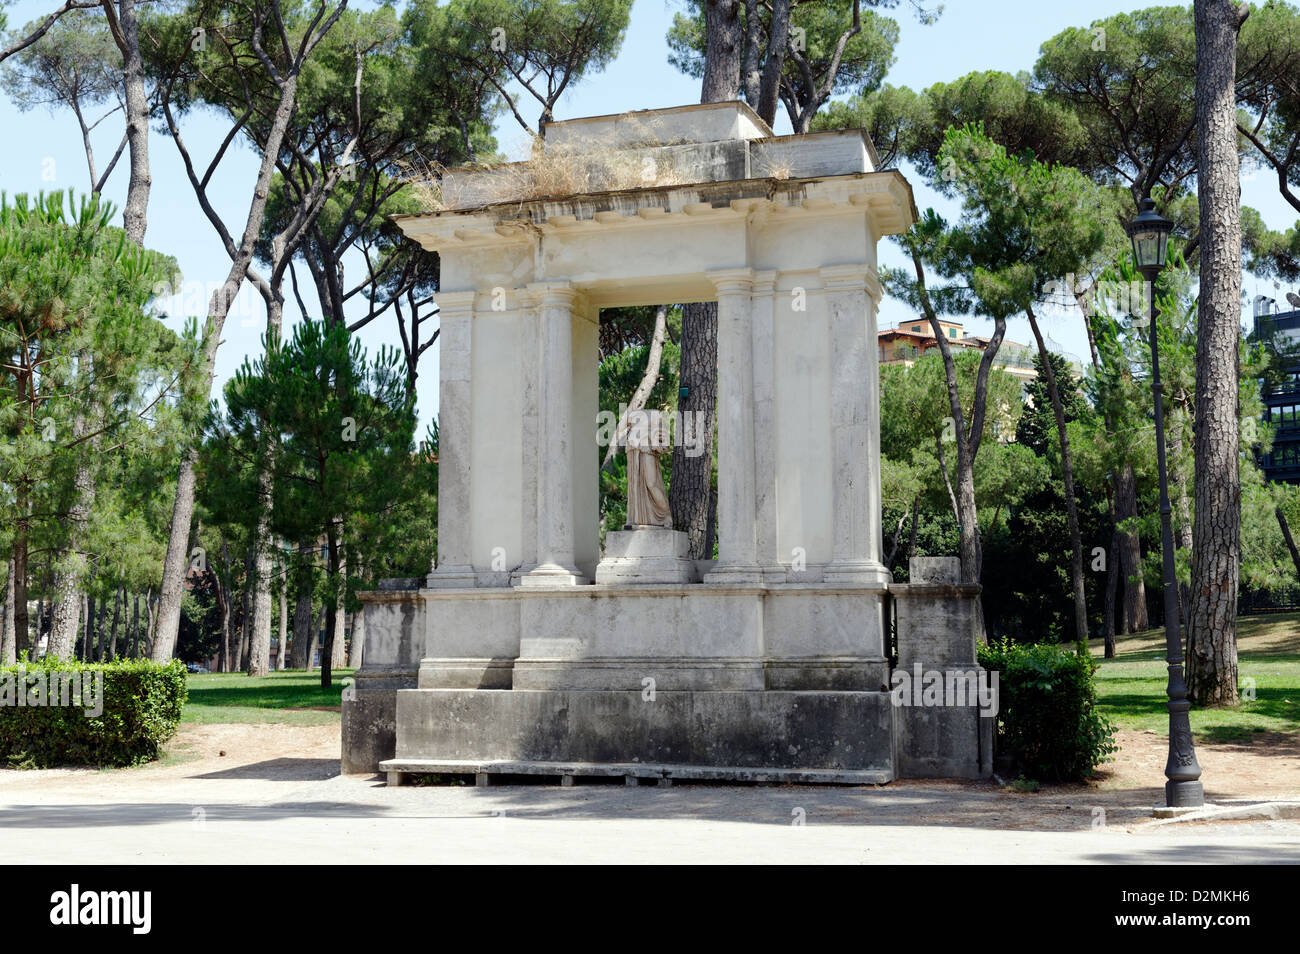 Rom. Italien. Blick auf das Edicola della Musa (Kiosk der Muse) Schrein Monument an die Gärten der Villa Borghese. Stockfoto